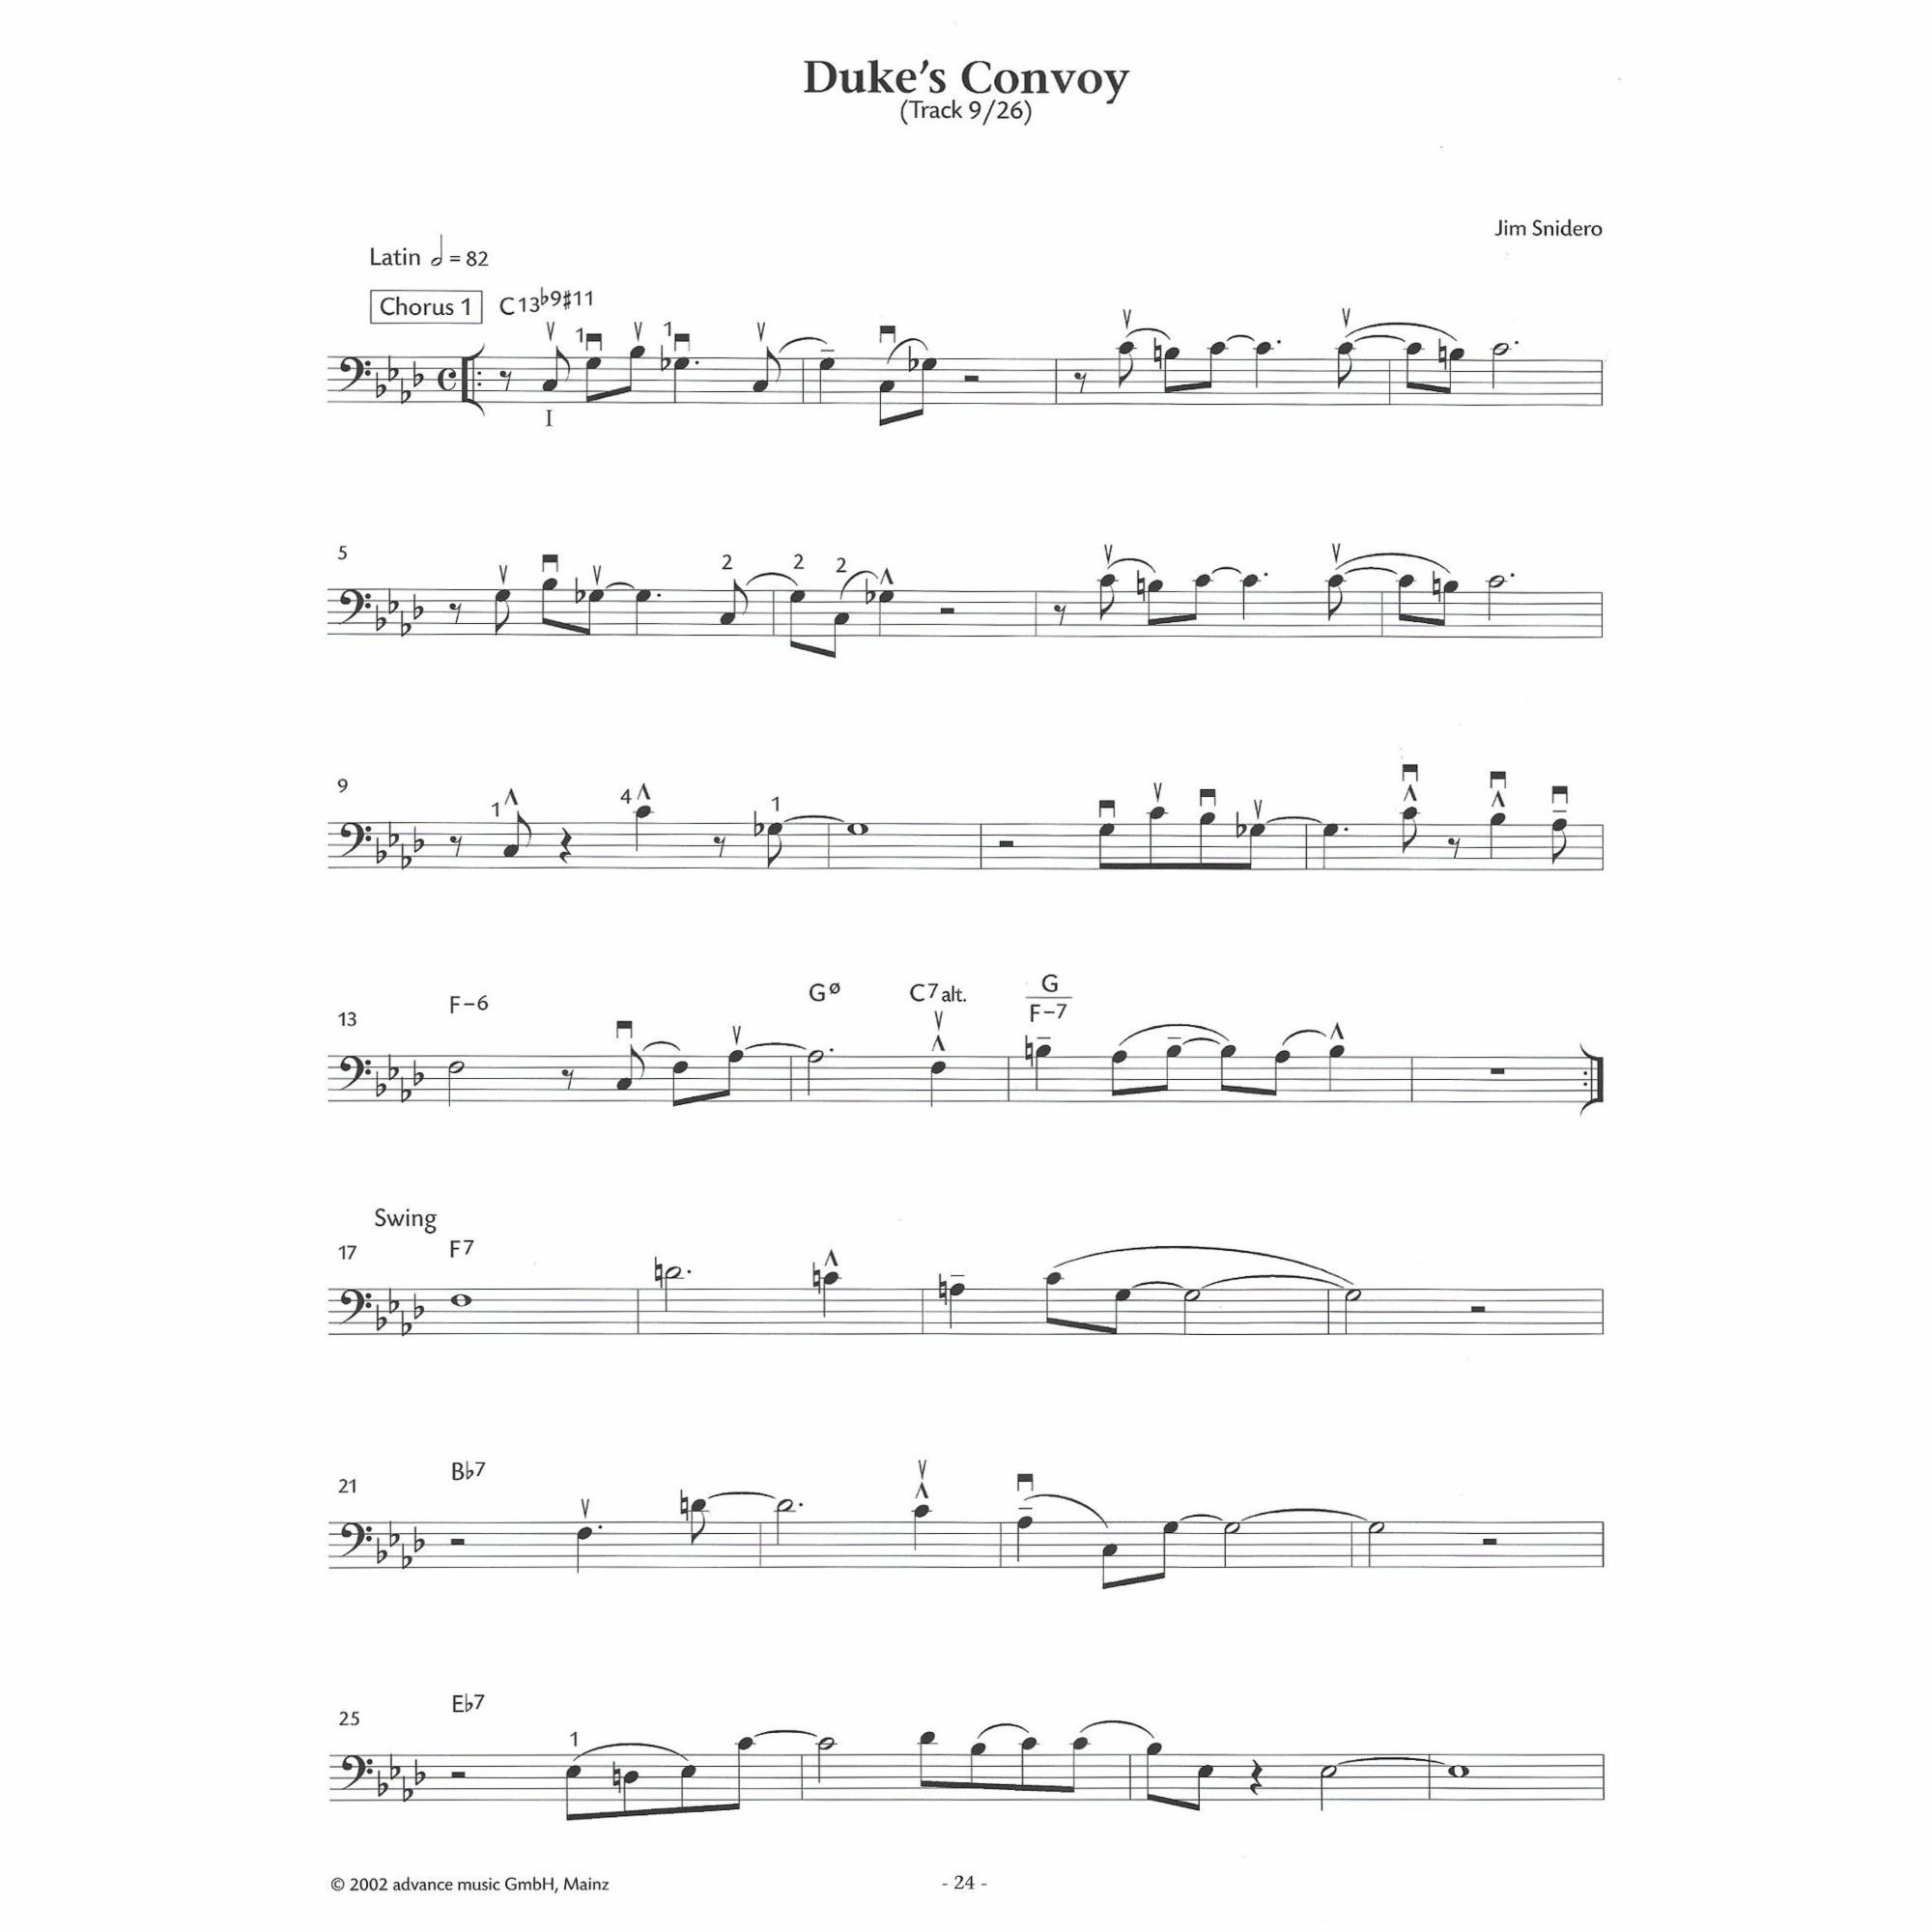 Sample: Cello (Pg. 24)